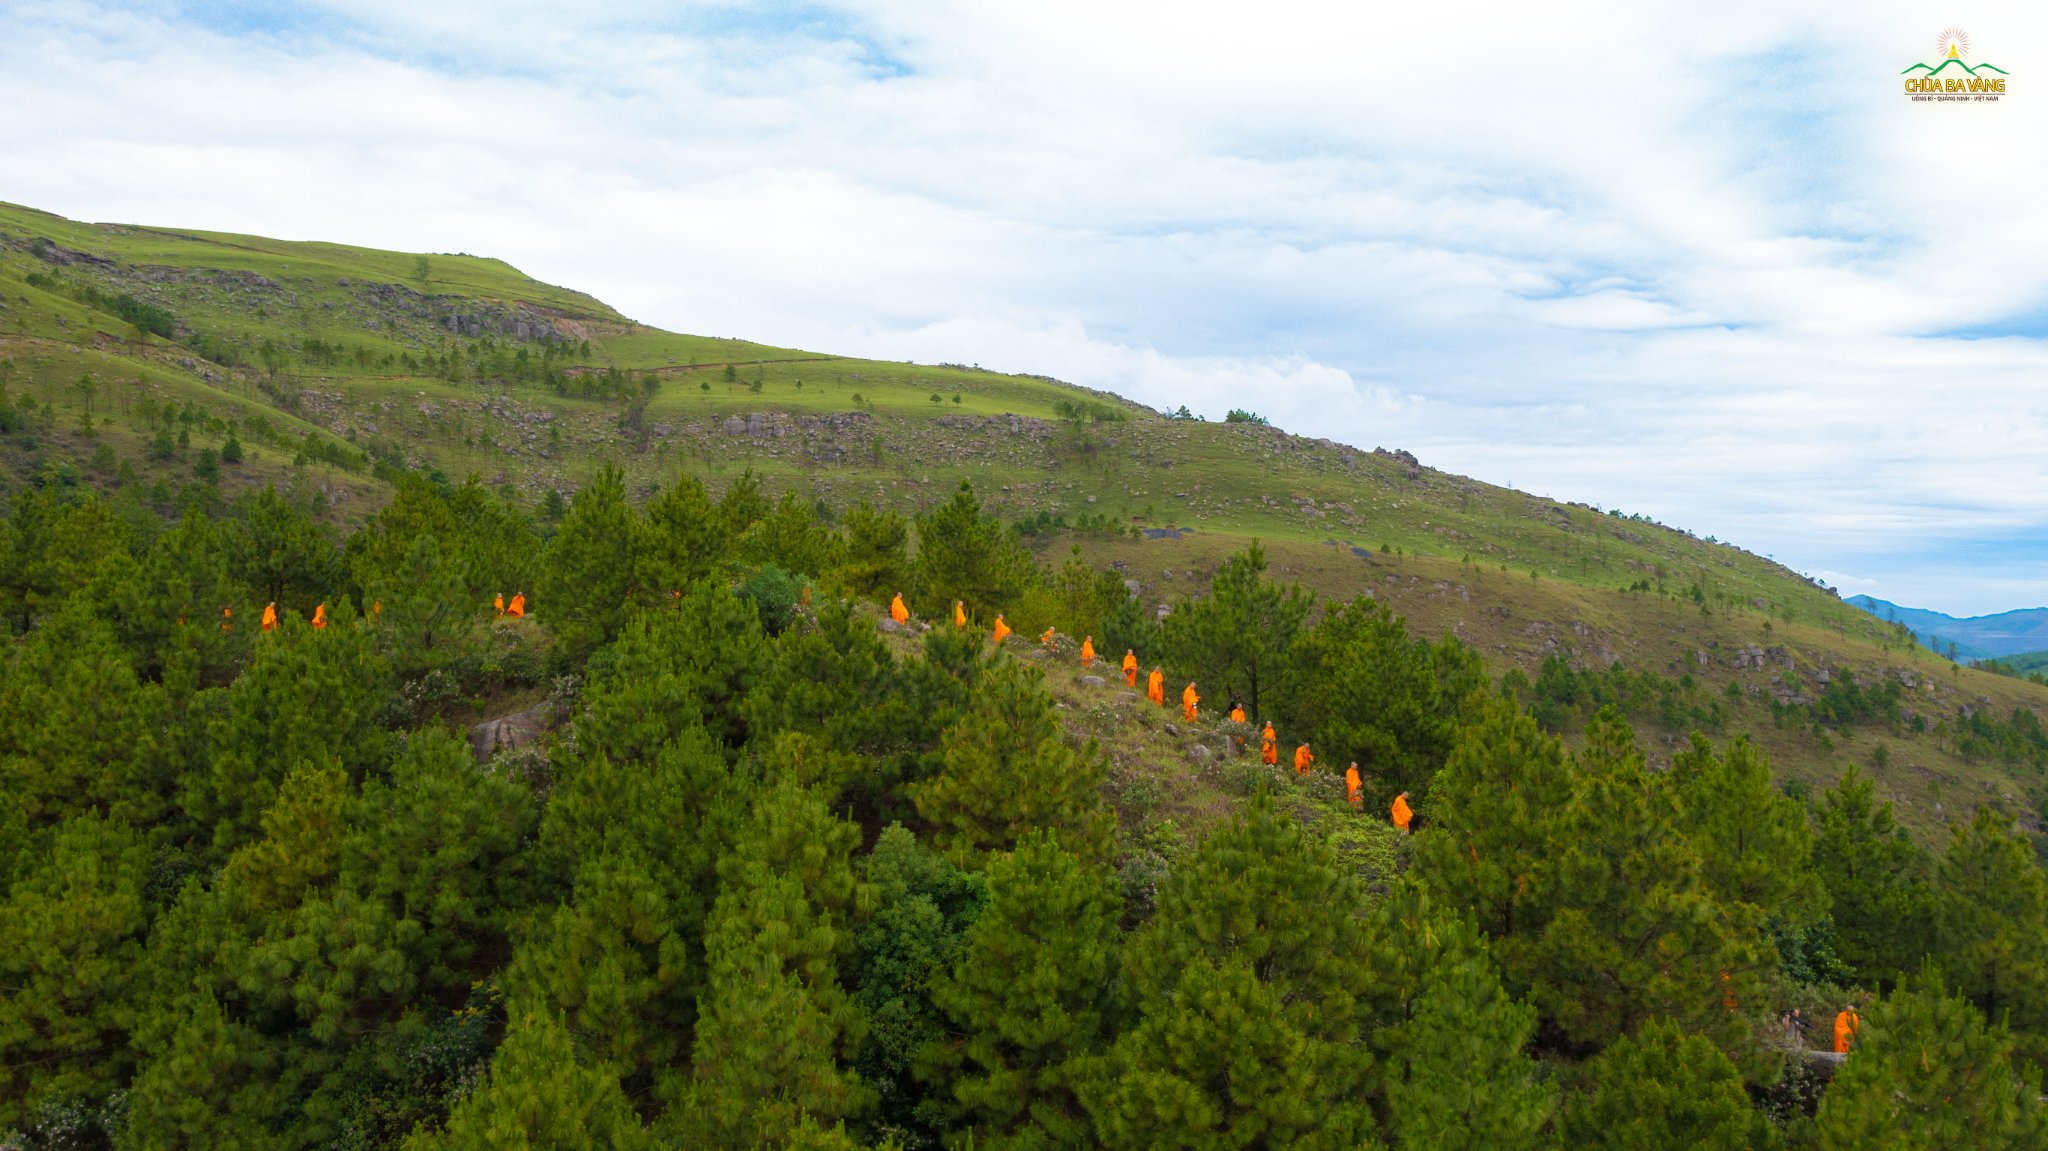 Hình ảnh chư Tăng chùa Ba Vàng giữa núi rừng bao la